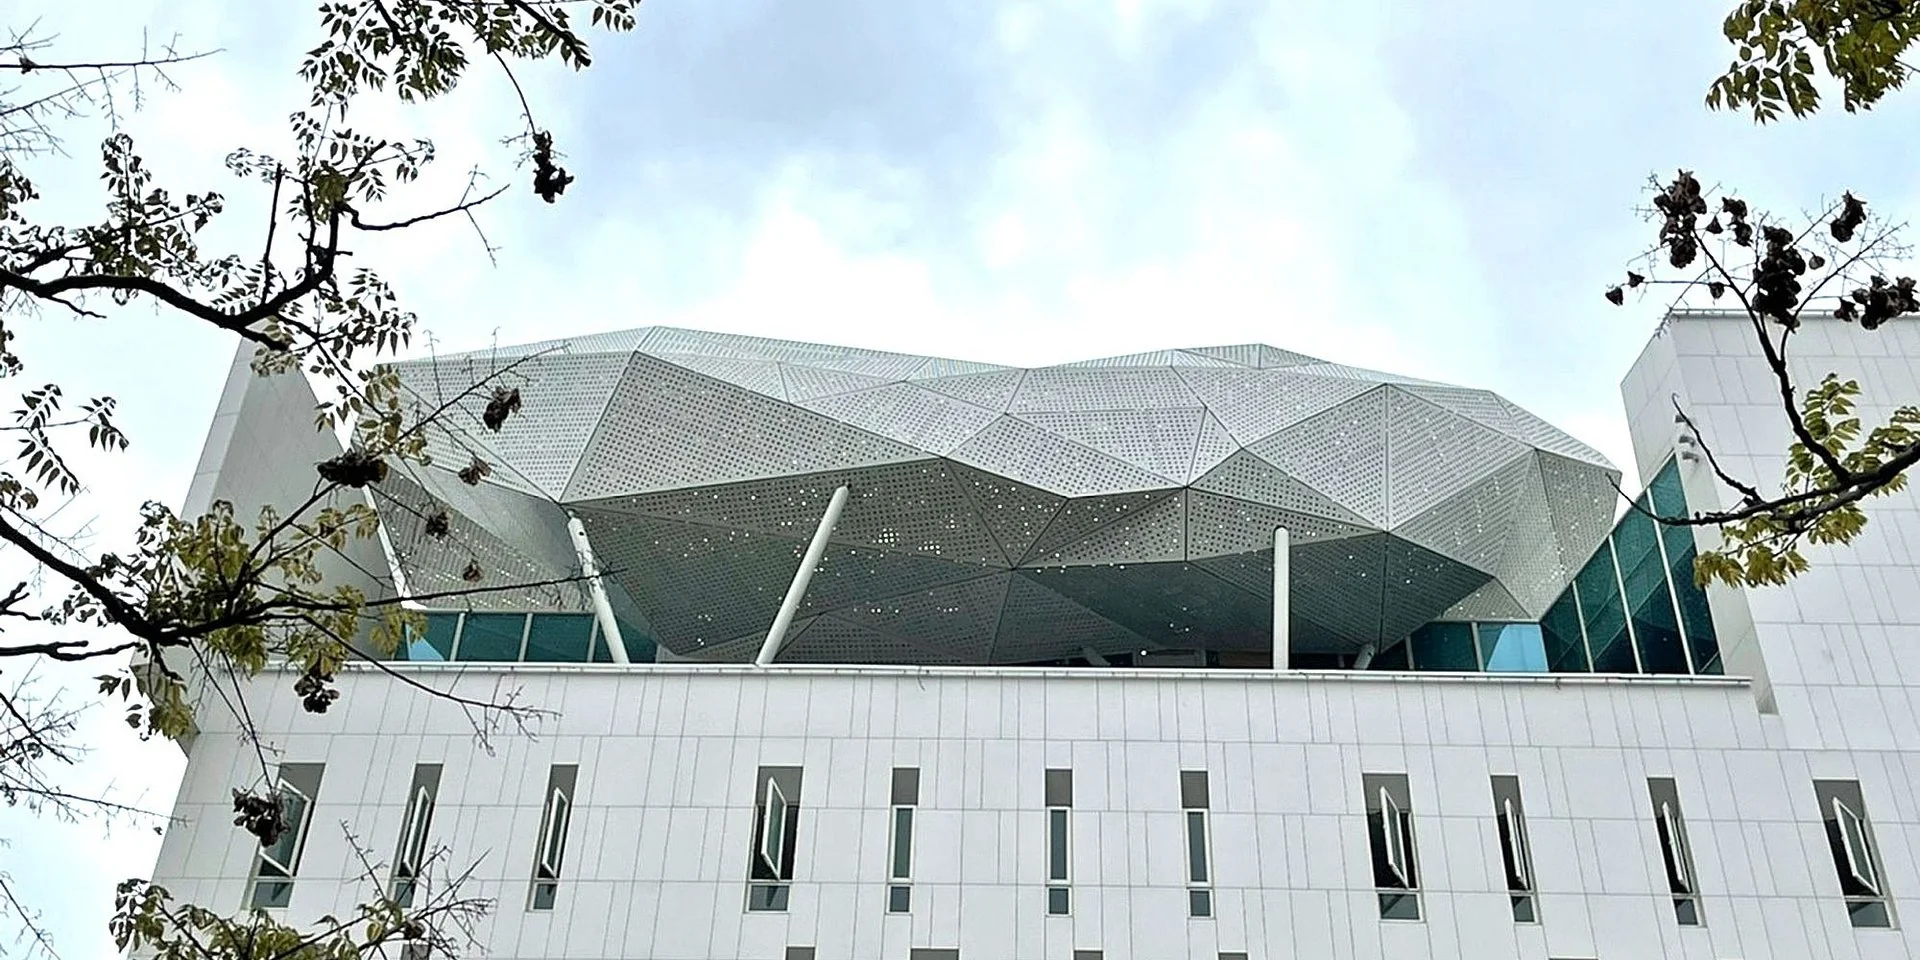 Charakterystyczną cechą architektury jest łukowata konstrukcja w kształcie chmur. Zdjęcie: Fuhau Engineering Corporation Ltd.